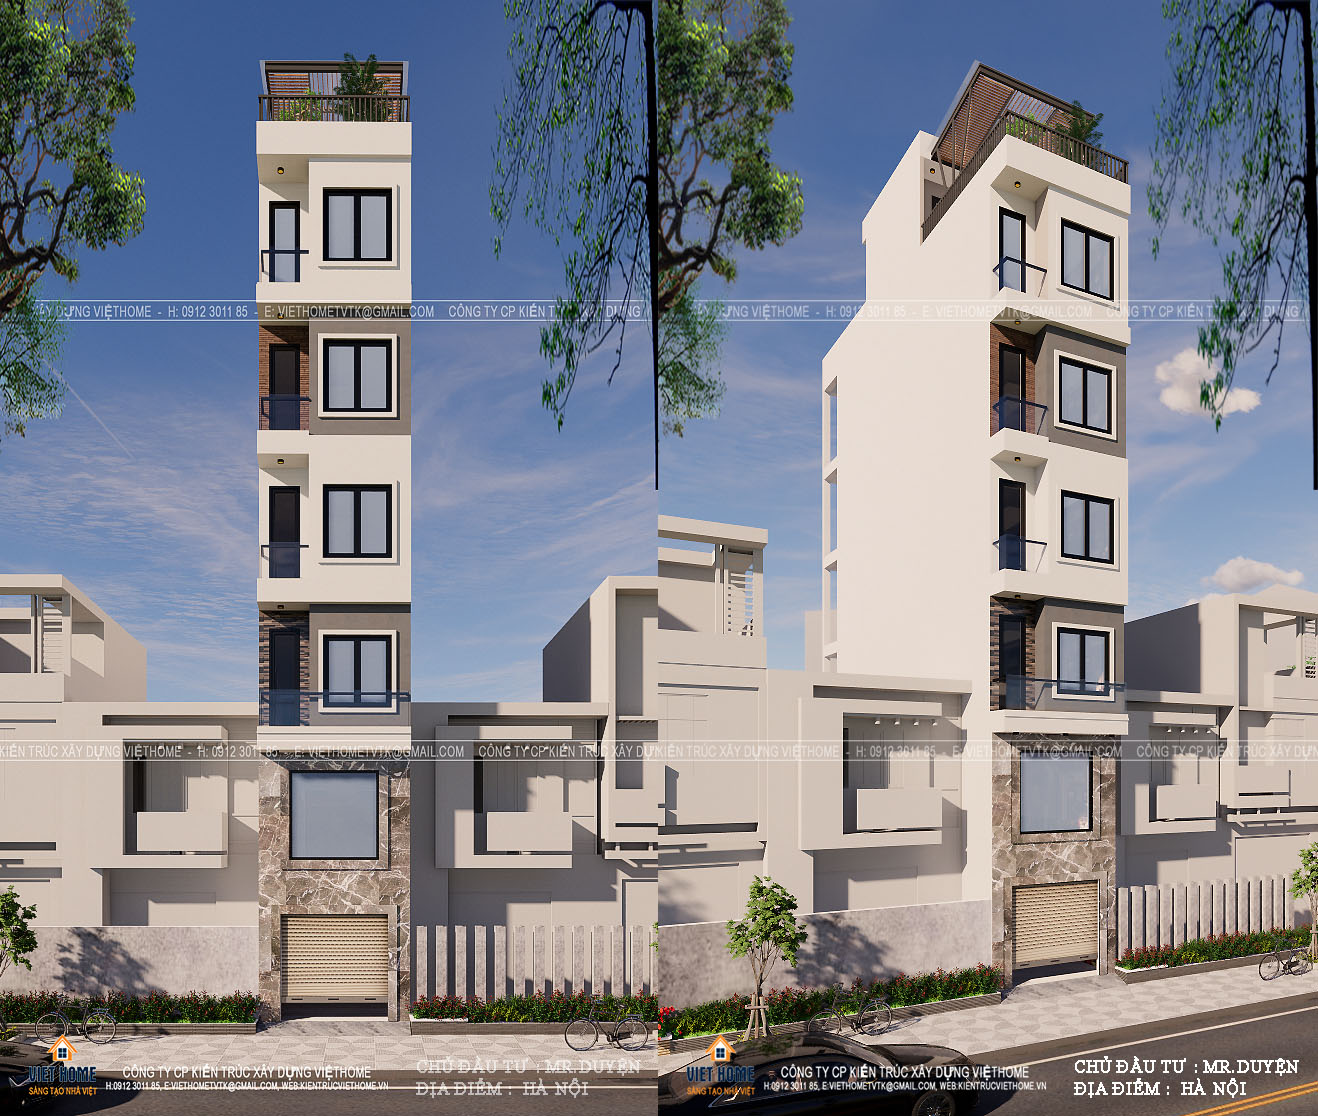 Thiết kế chung cư mini 5 tầng 1 tum có gác lửng tại thủ đô Hà Nội - Chủ đầu  tư: Anh Duyện CÔNG TY CỔ PHẦN KIẾN TRÚC XÂY DỰNG VIỆT HOME